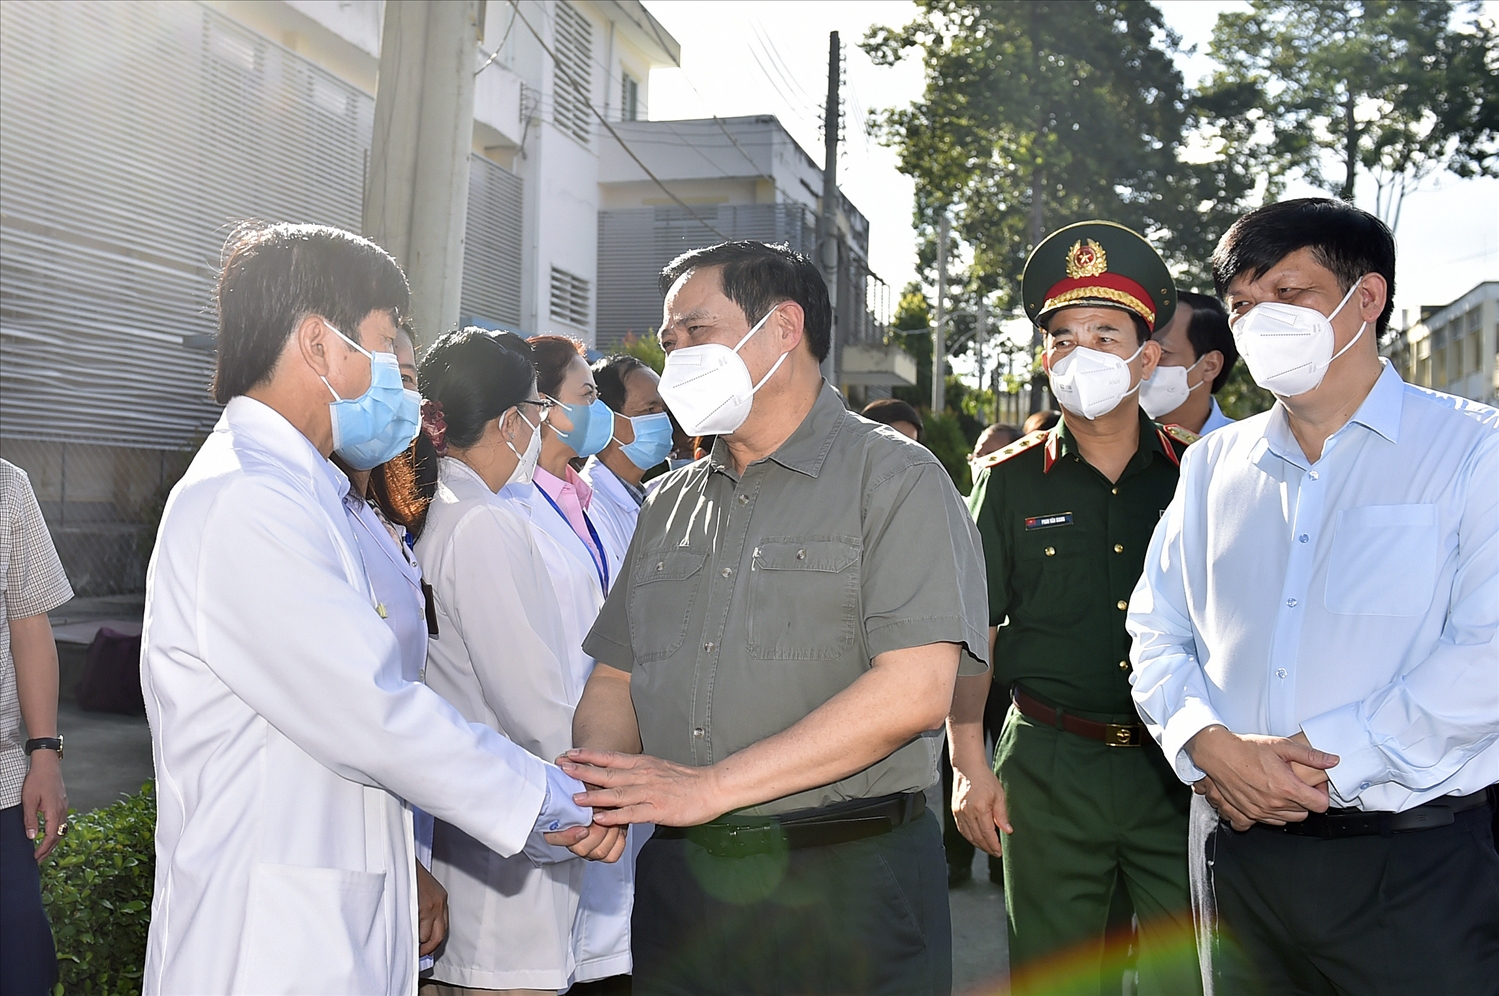 Tới kiểm tra công tác phòng chống dịch COVID-19 tại khu điều trị của Bệnh viện đa khoa Bình Dương, Thủ tướng yêu cầu bệnh viện cần tiếp tục nỗ lực, cố gắng vượt qua mọi khó khăn, phục vụ người bệnh, phục vụ nhân dân tốt nhất. Ảnh VGP/Nhật Bắc